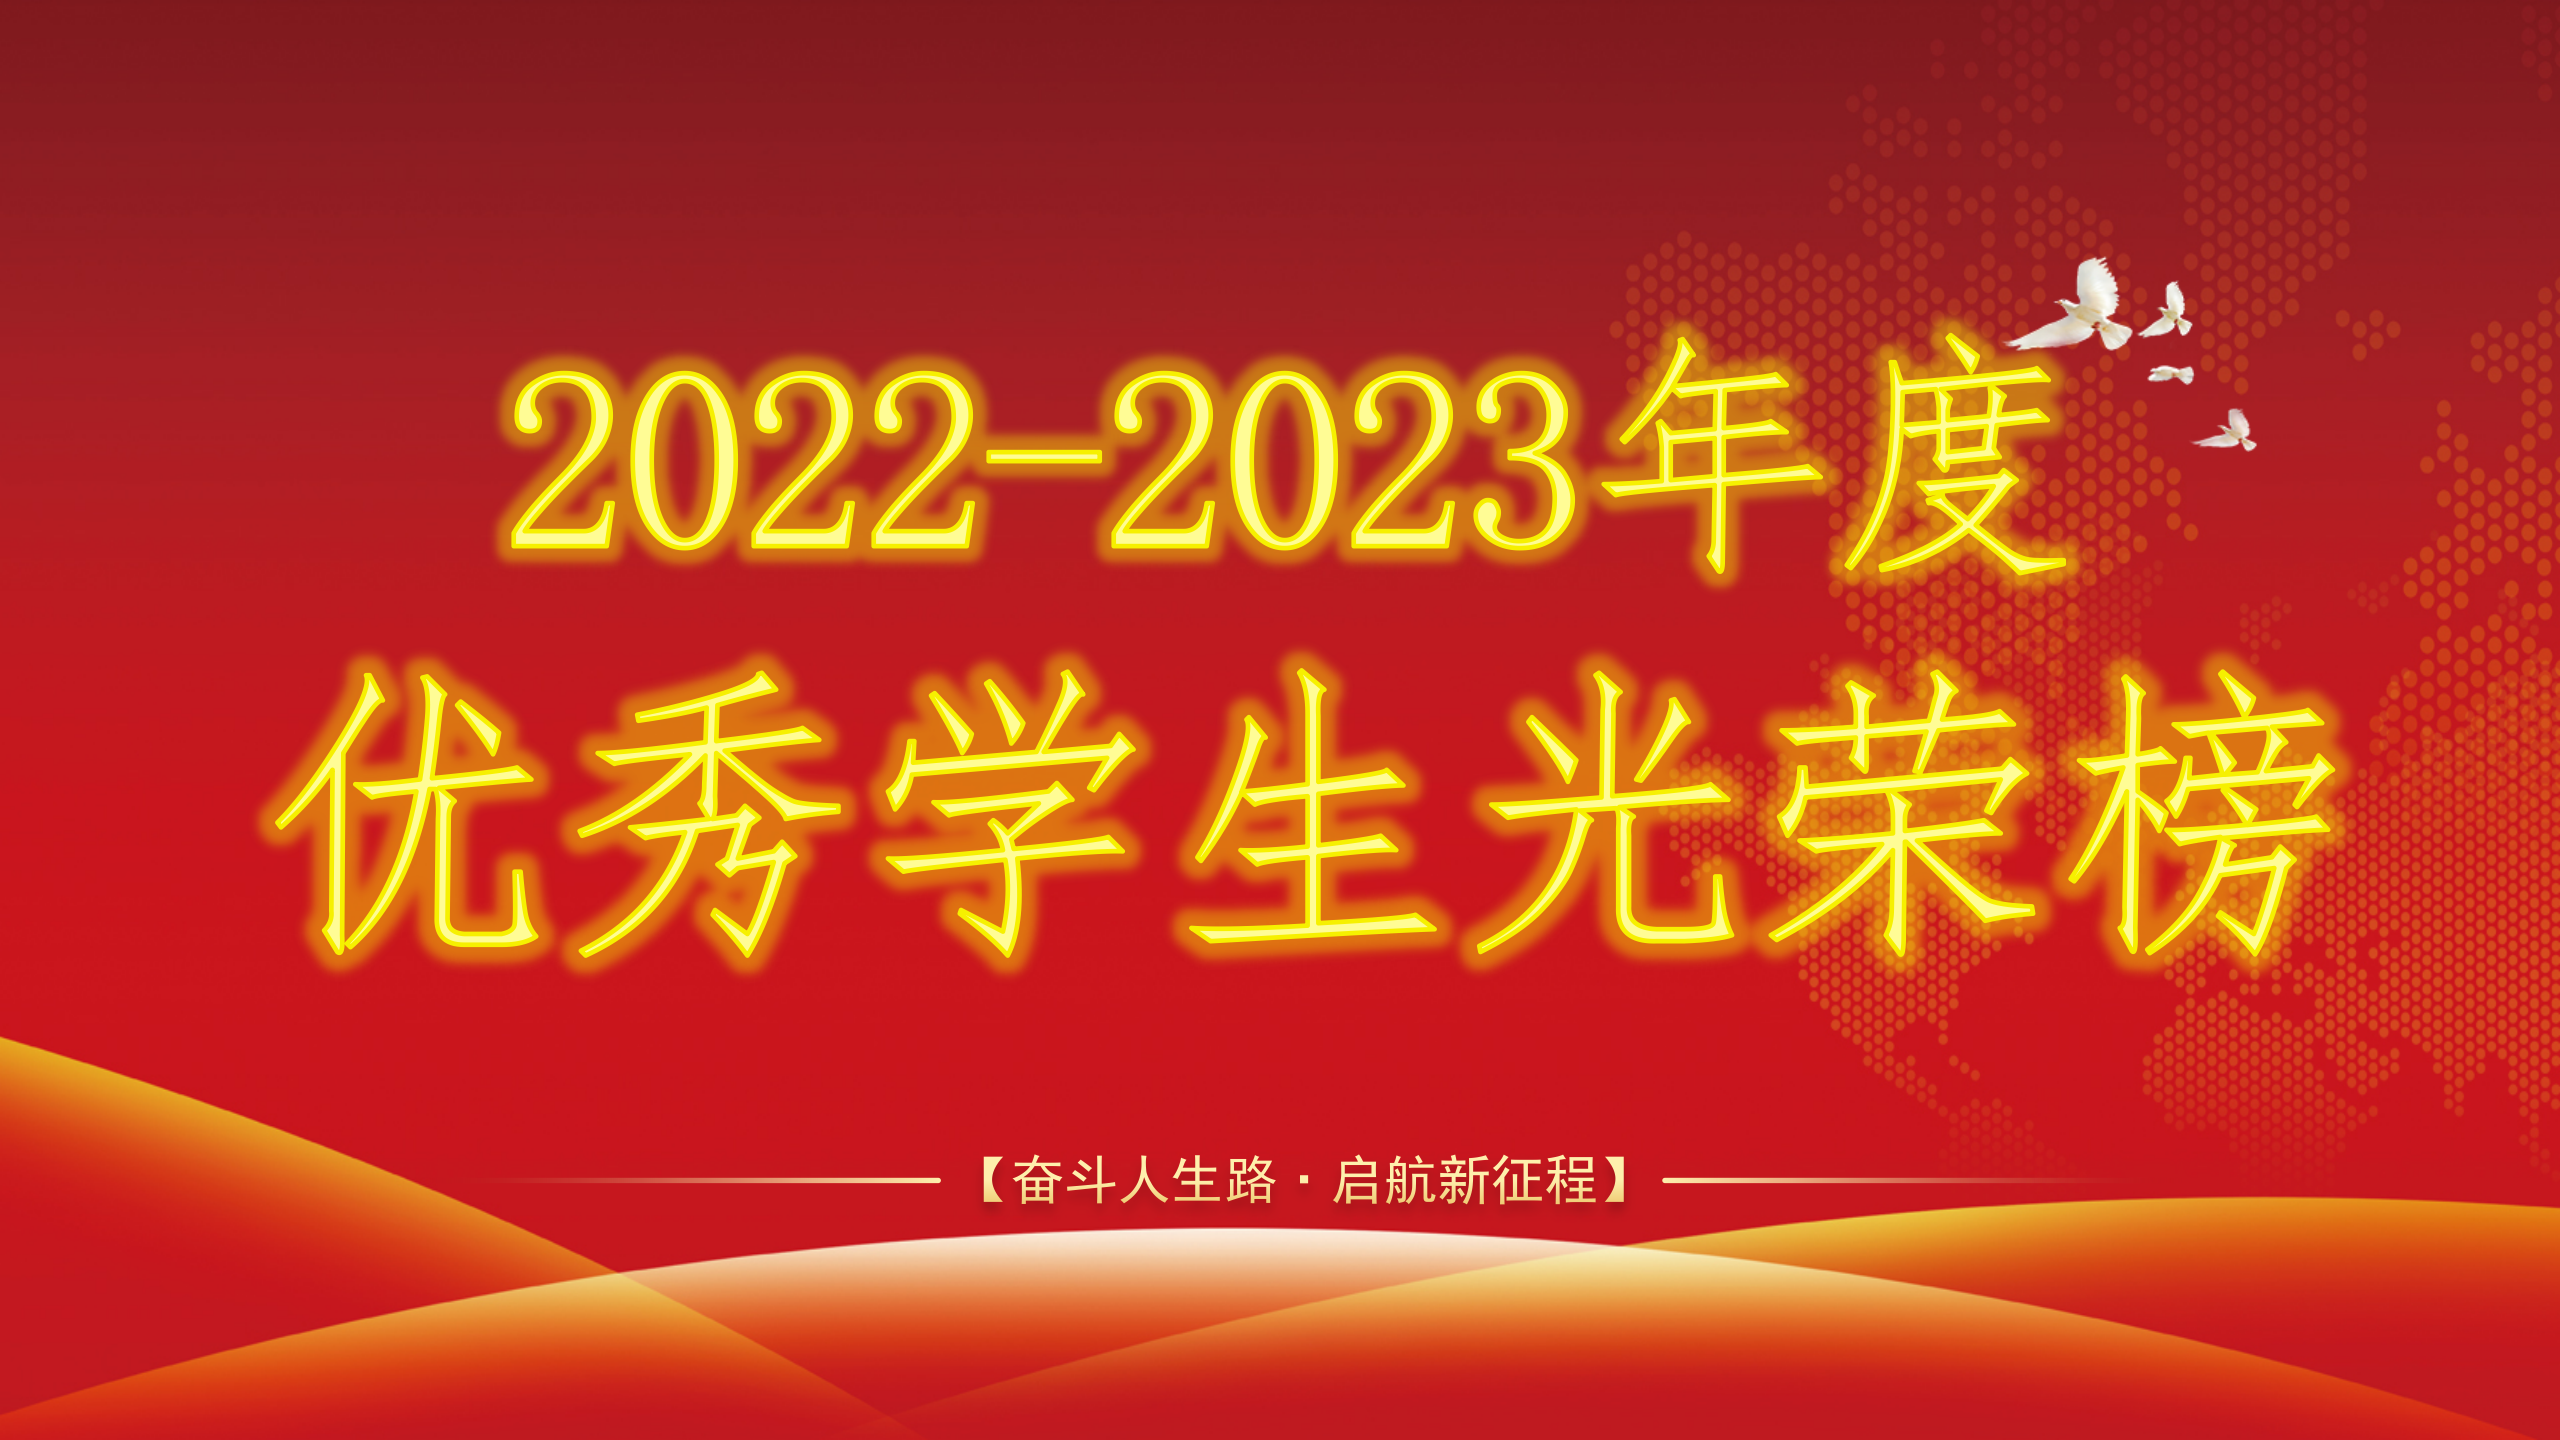 2022-2023年度优秀学生光荣榜封面_01.png